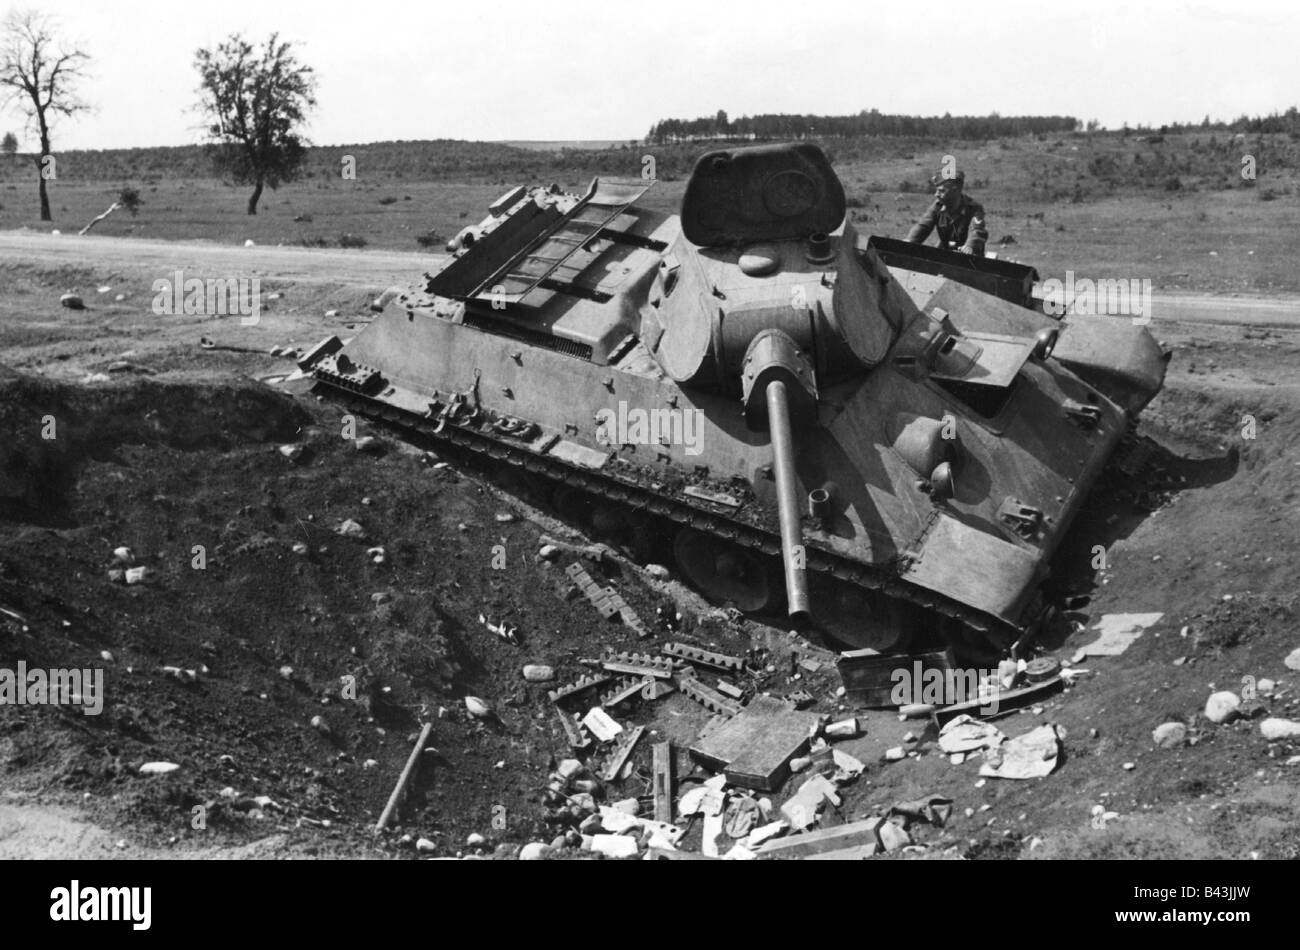 Eventi, Seconda guerra mondiale / seconda guerra mondiale, Russia 1941, avanzata tedesca, bussato al carro armato sovietico T-34/76, soldato tedesco della Luftwaffe che lo ispeziona, luglio 1941, Foto Stock